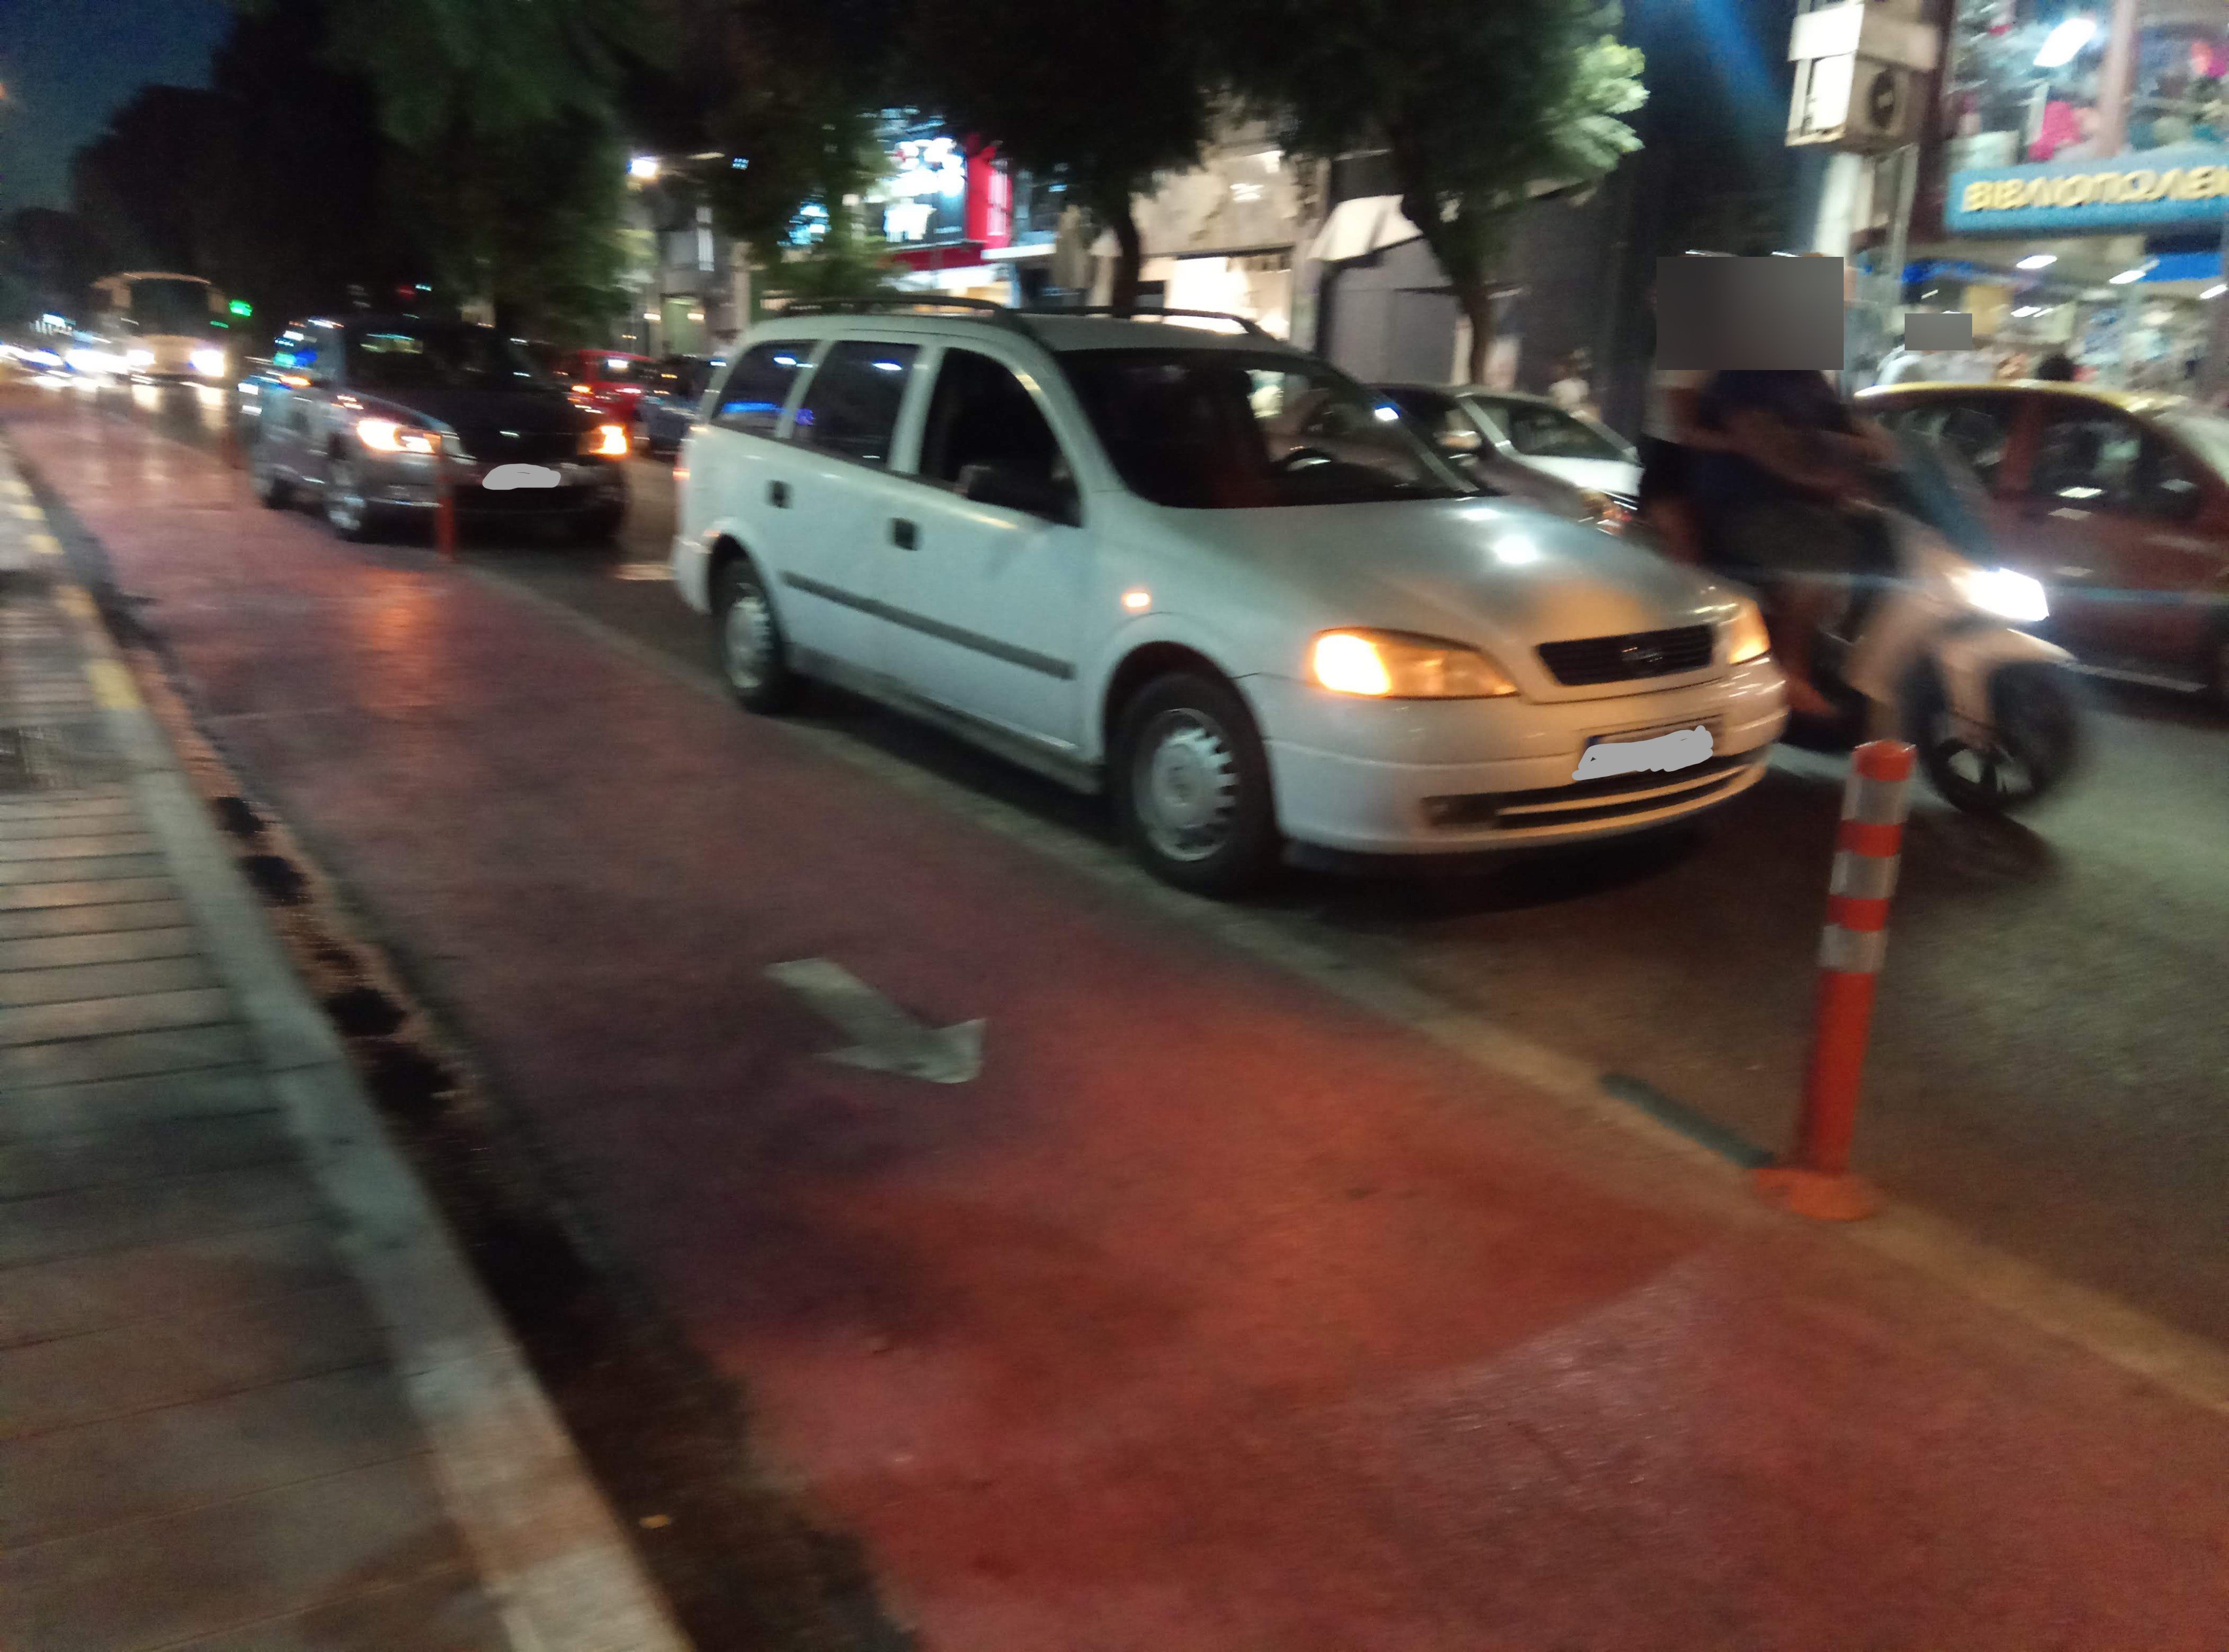 Επί 40 λεπτά ήταν σταματημένος δίπλα στον ποδηλατόδρομο στο κέντρο των Χανίων